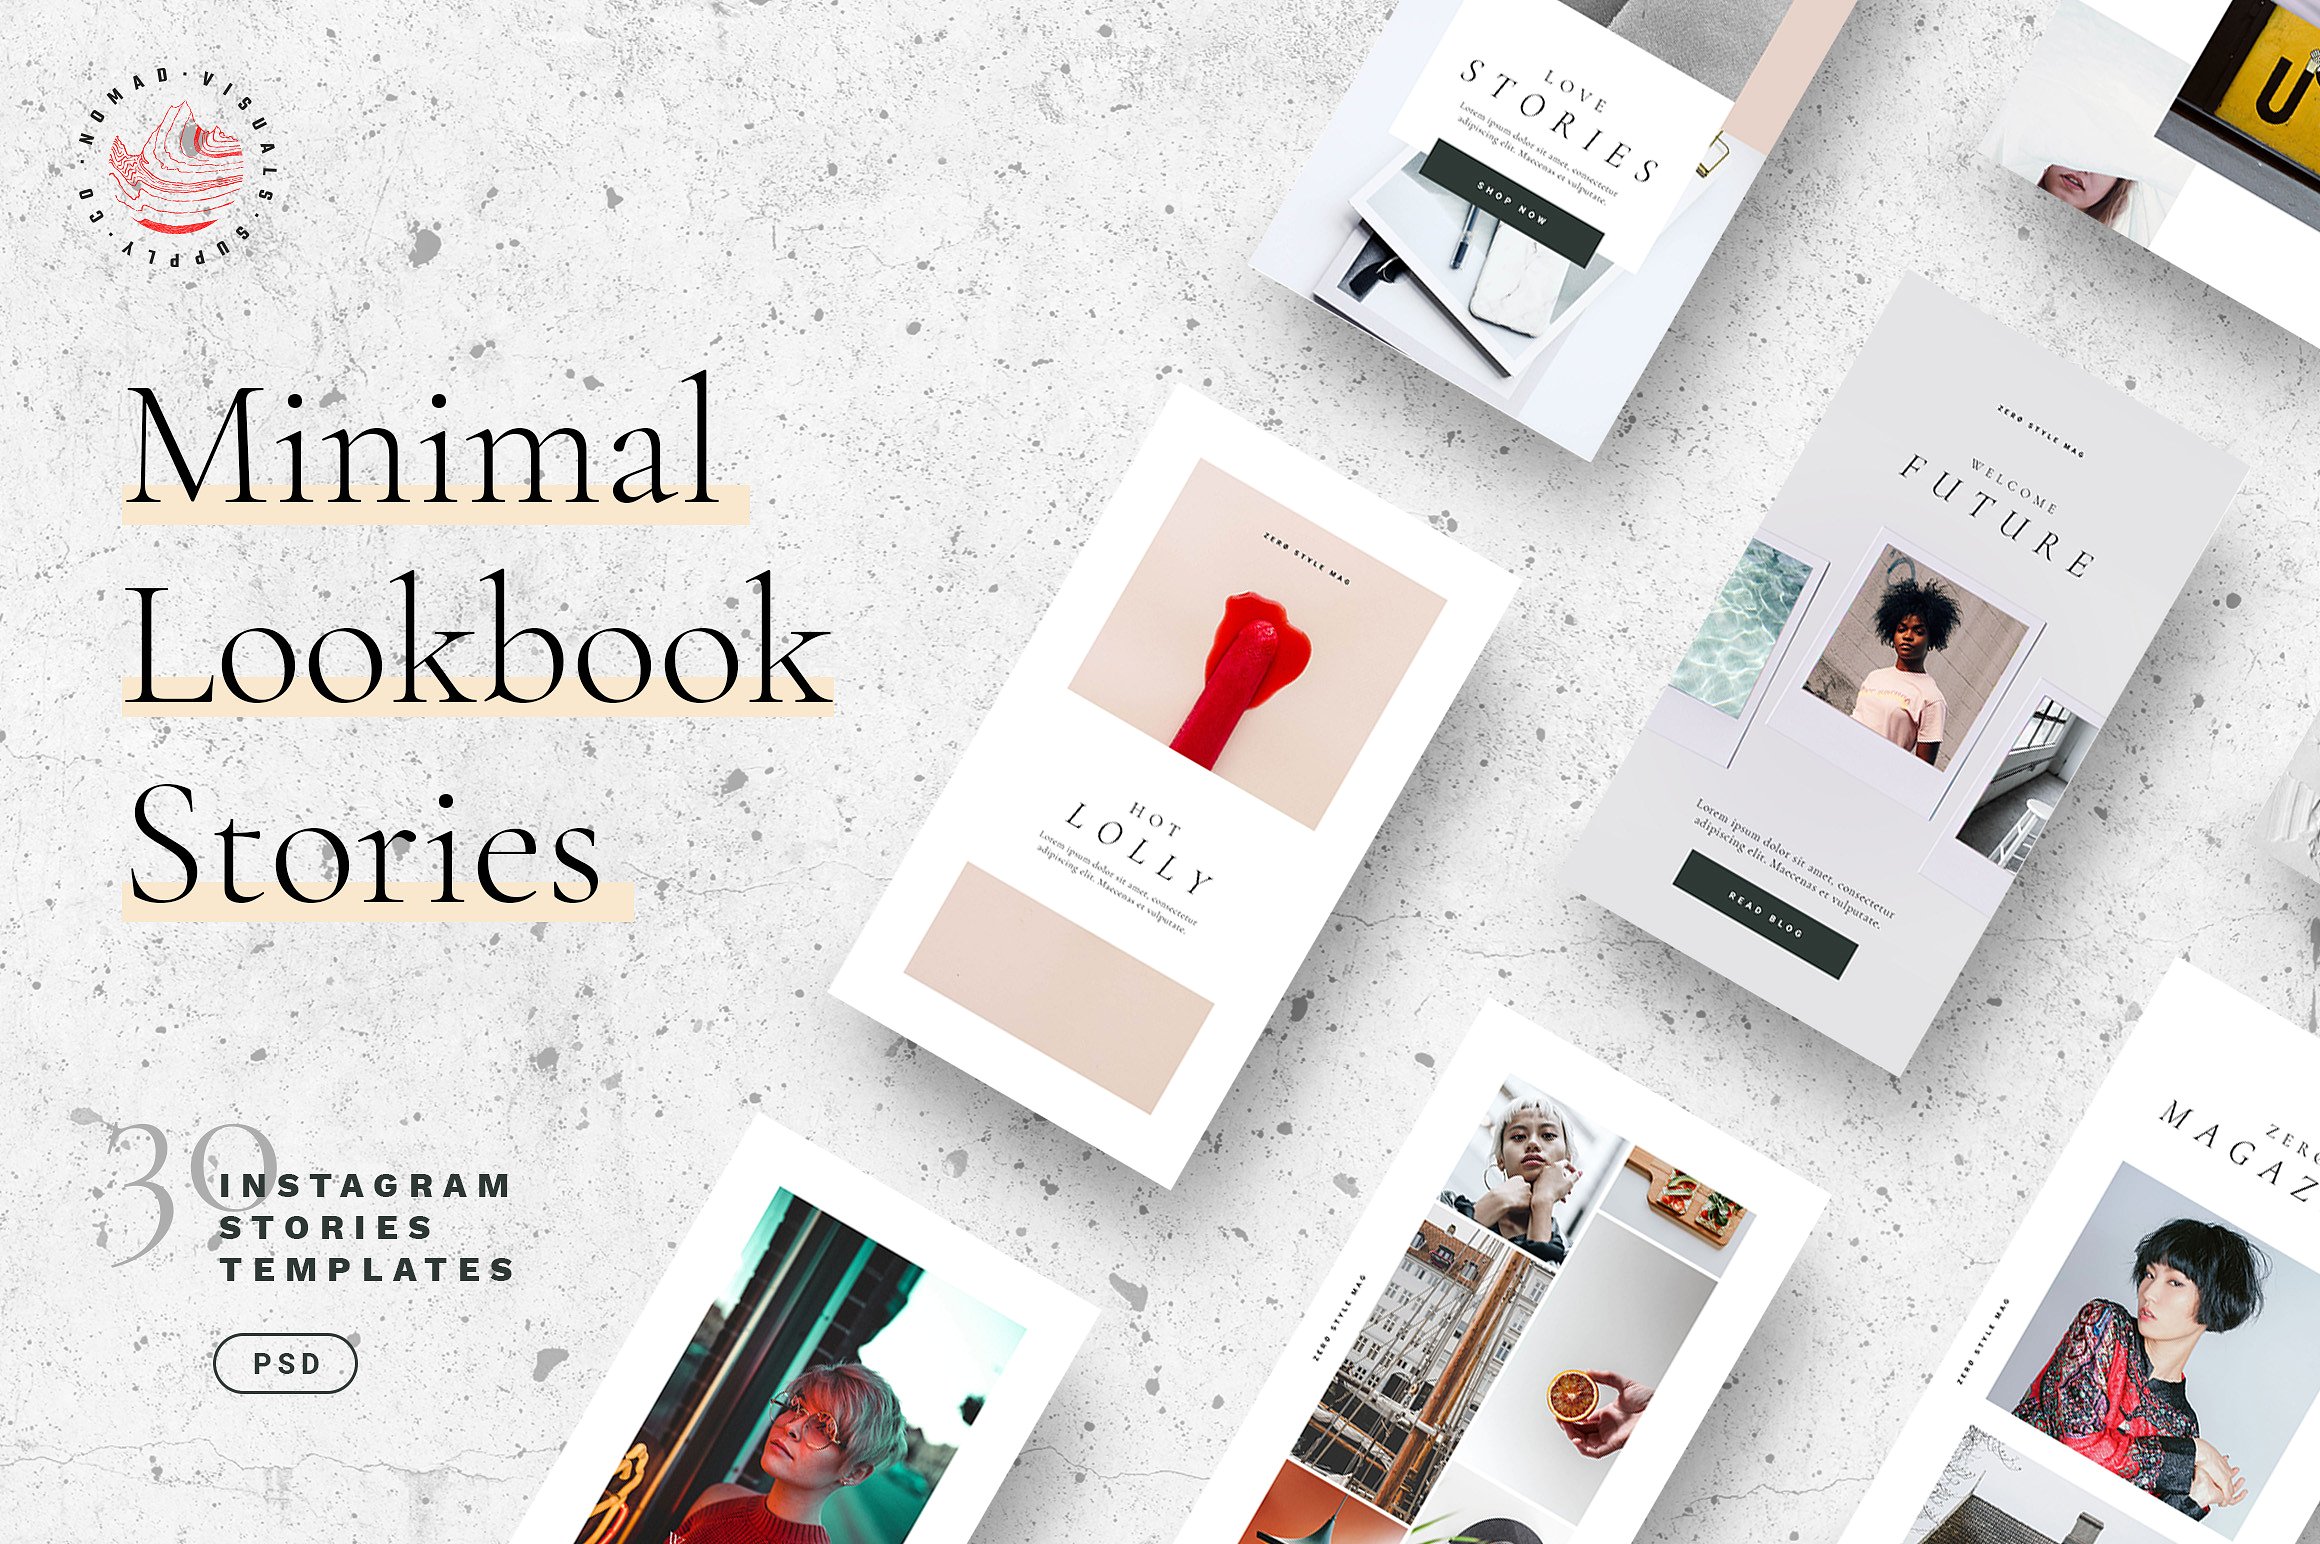 30个独特时尚的Lookbook社交媒体Instagram故事模板素材中国精选 Minimal Lookbook Instagram Stories [psd]插图